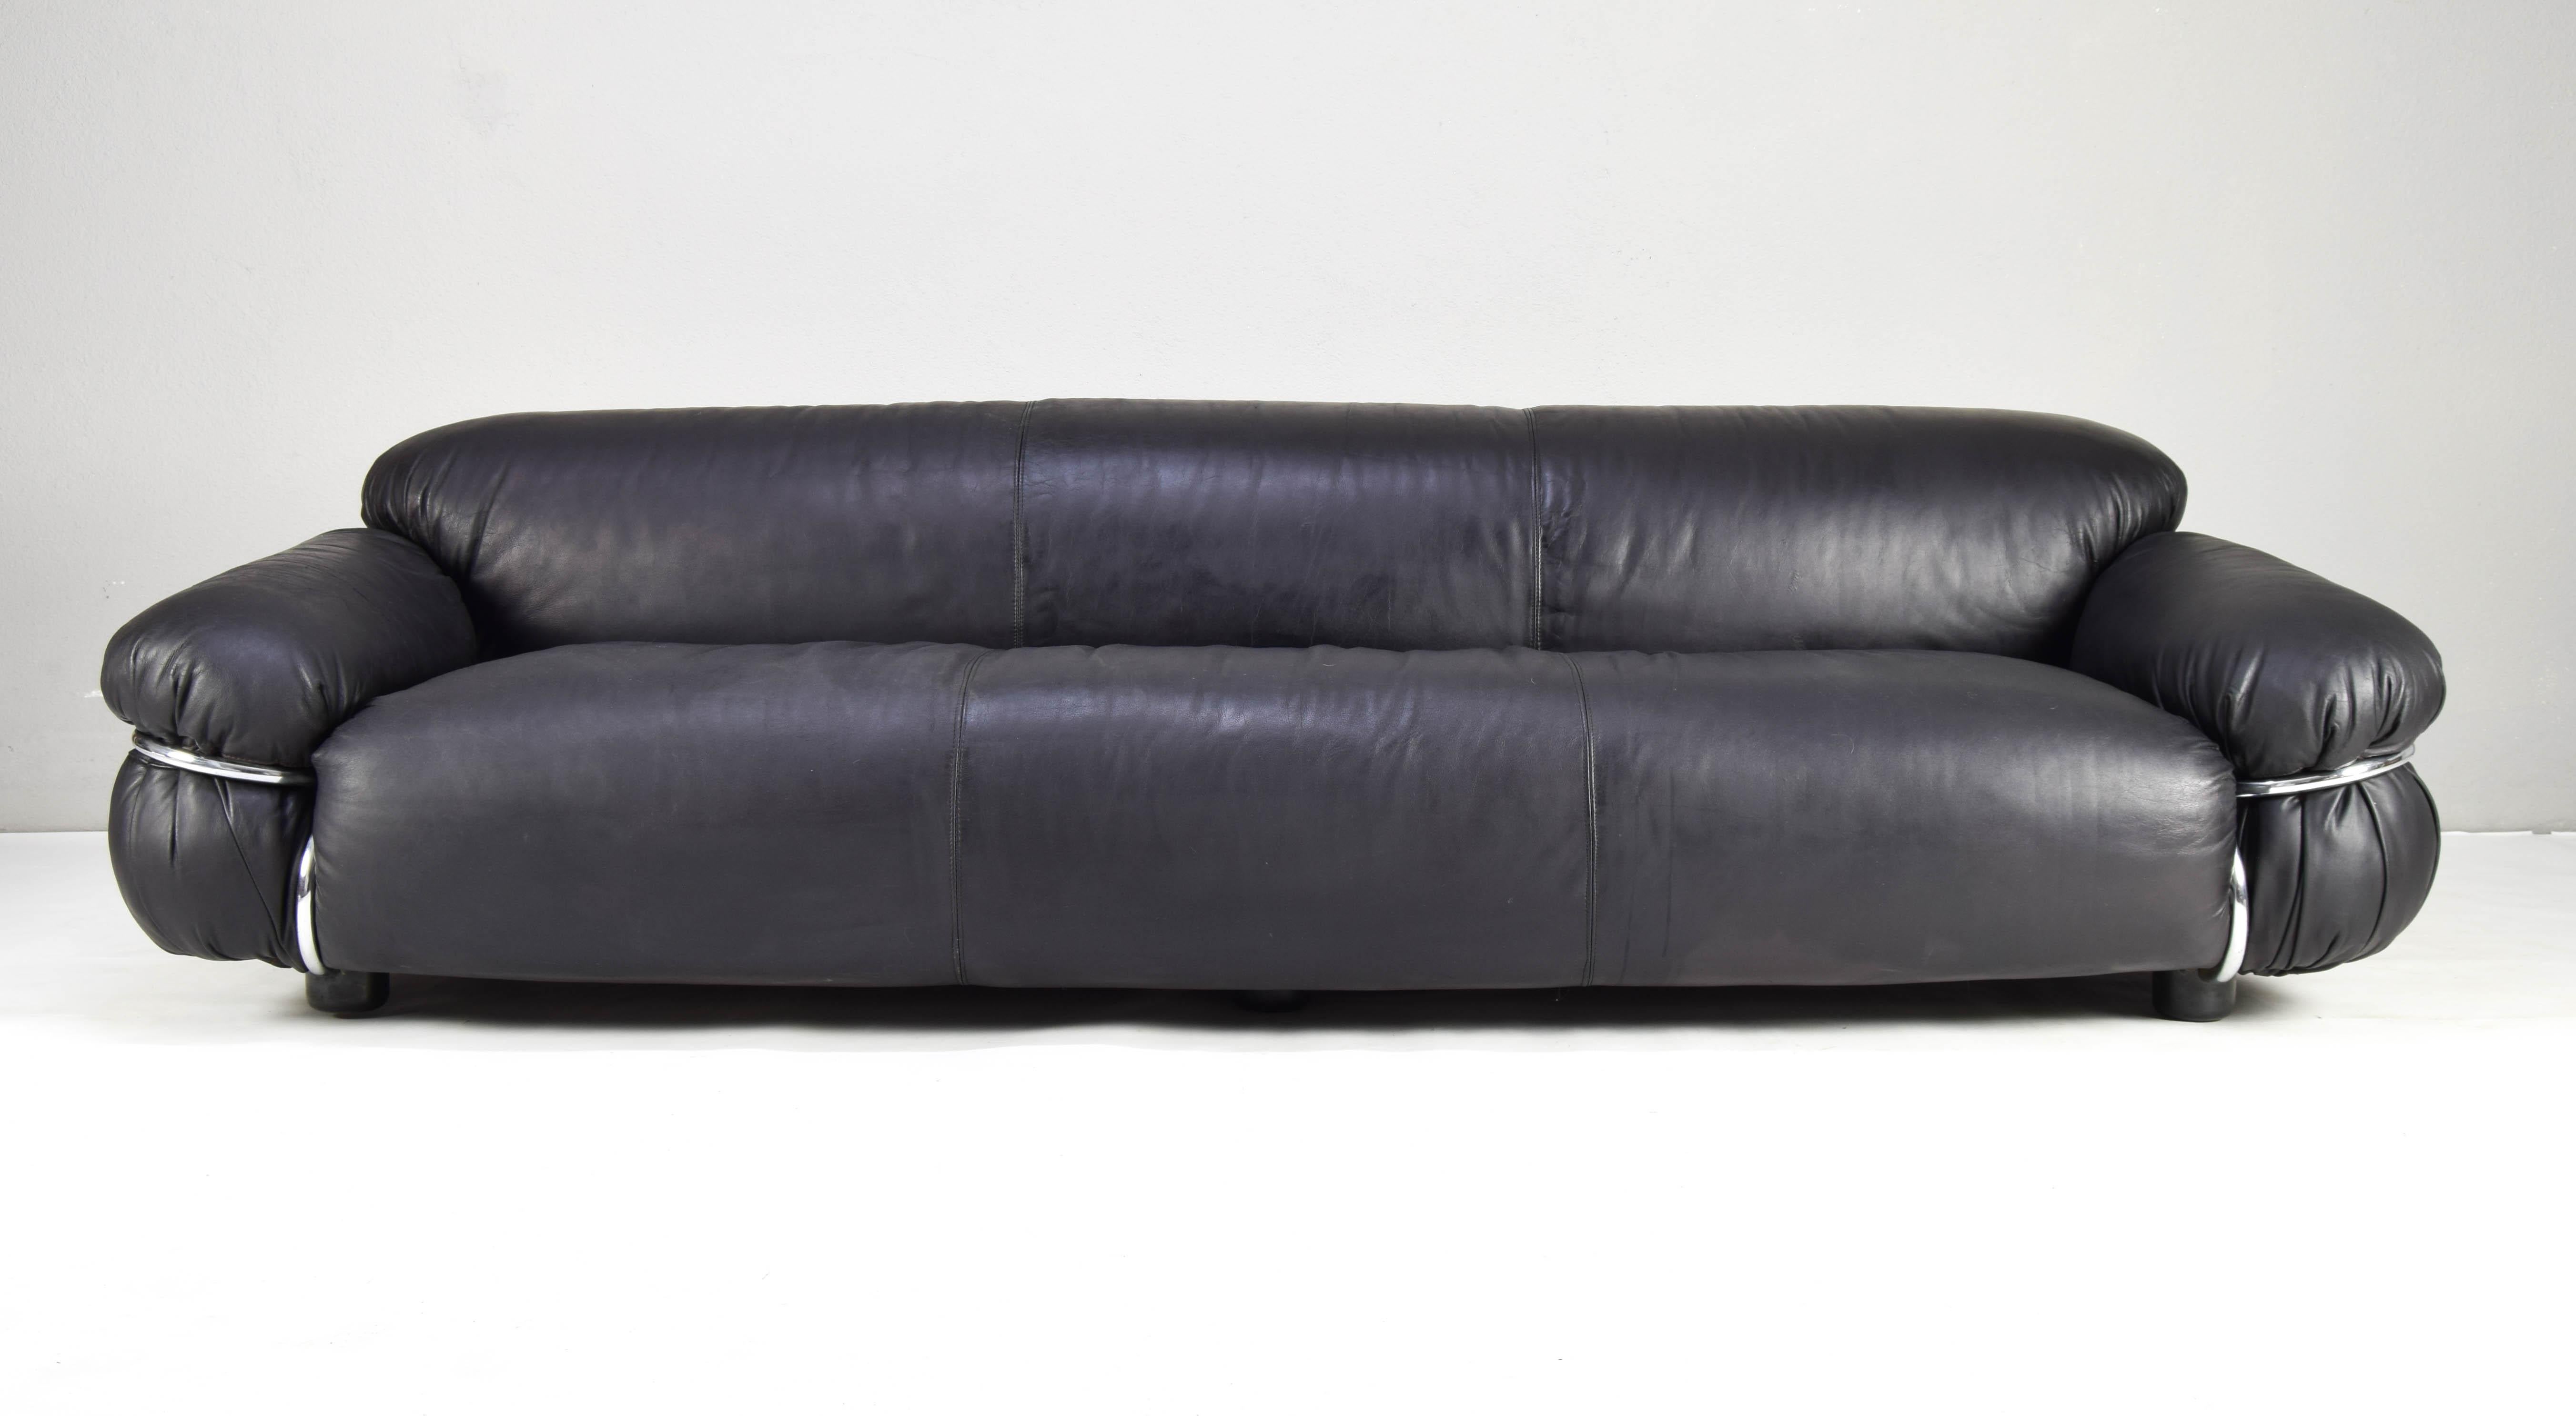 Italian Mid Century Modern Leather Sesann Frattini XL Sofa by Cassina Italy 70s